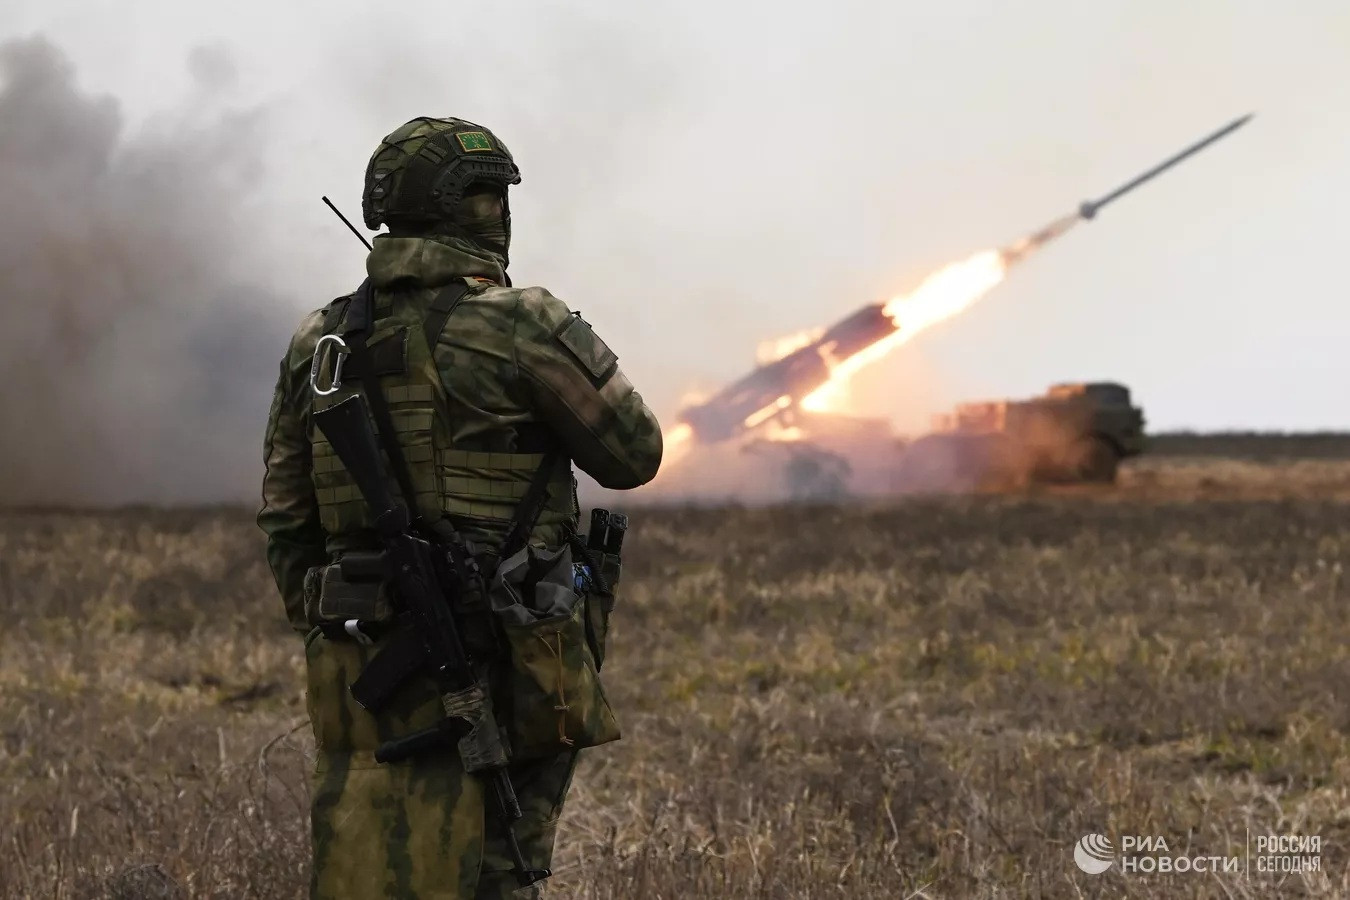 Nga tố UAV Ukraine tấn công trạm bơm dầu, Kiev phản đối ‘đóng băng’ chiến sự